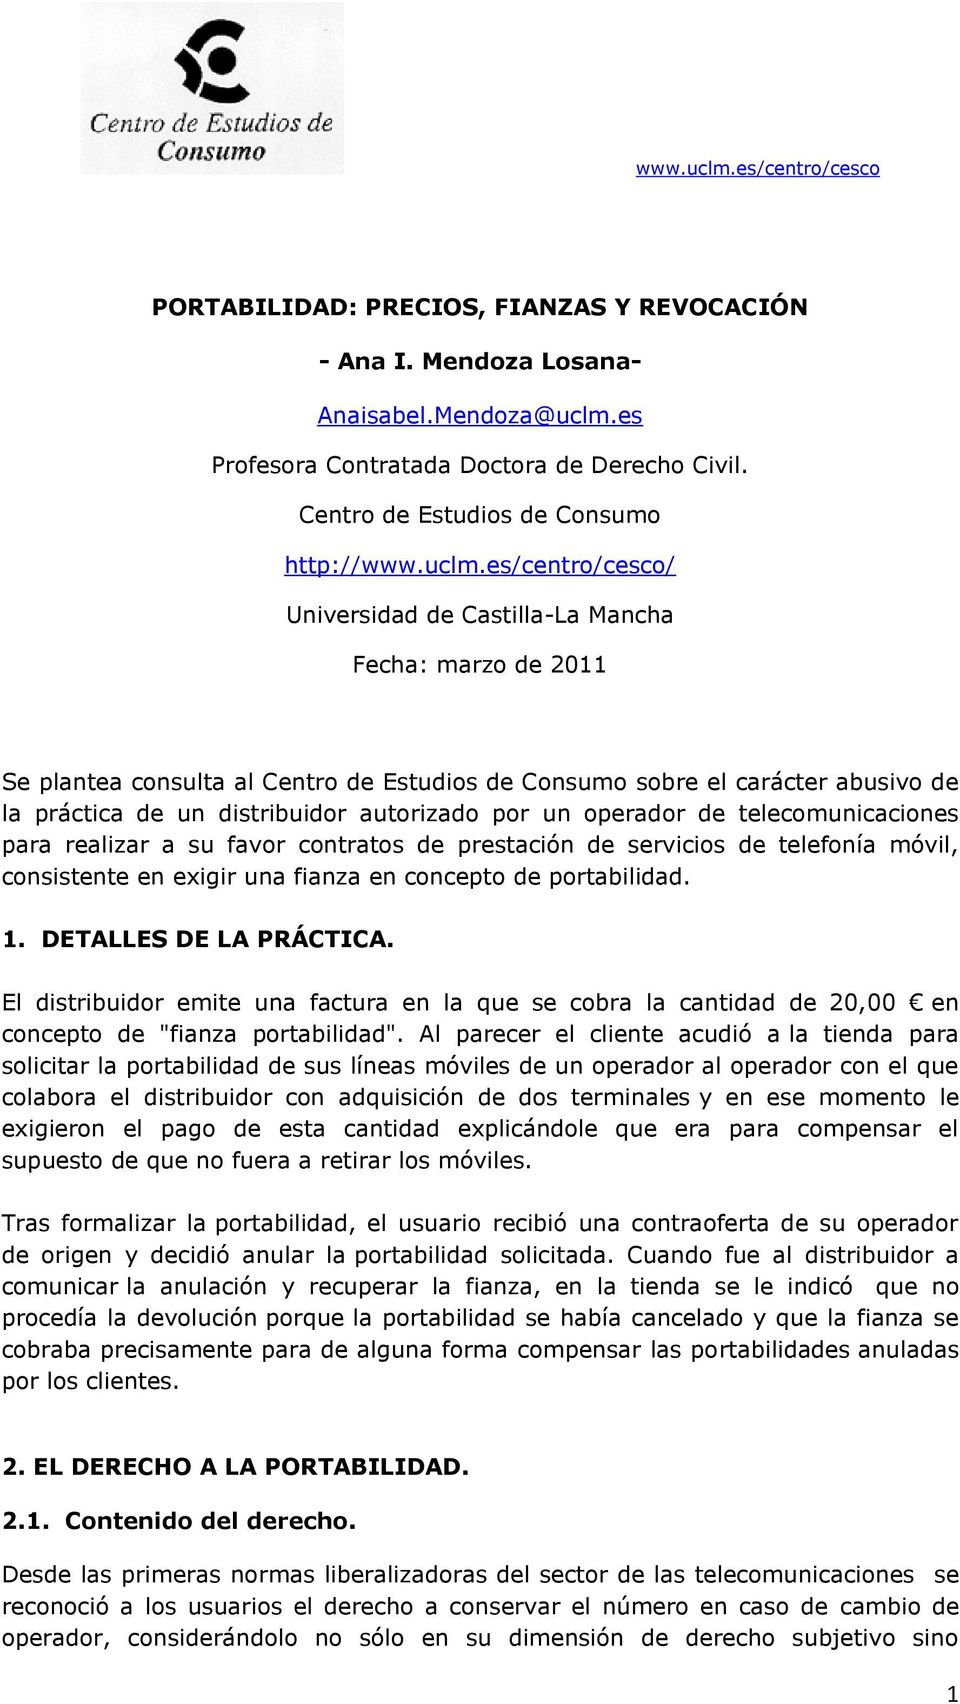 es/centro/cesco/ Universidad de Castilla-La Mancha Fecha: marzo de 2011 Se plantea consulta al Centro de Estudios de Consumo sobre el carácter abusivo de la práctica de un distribuidor autorizado por